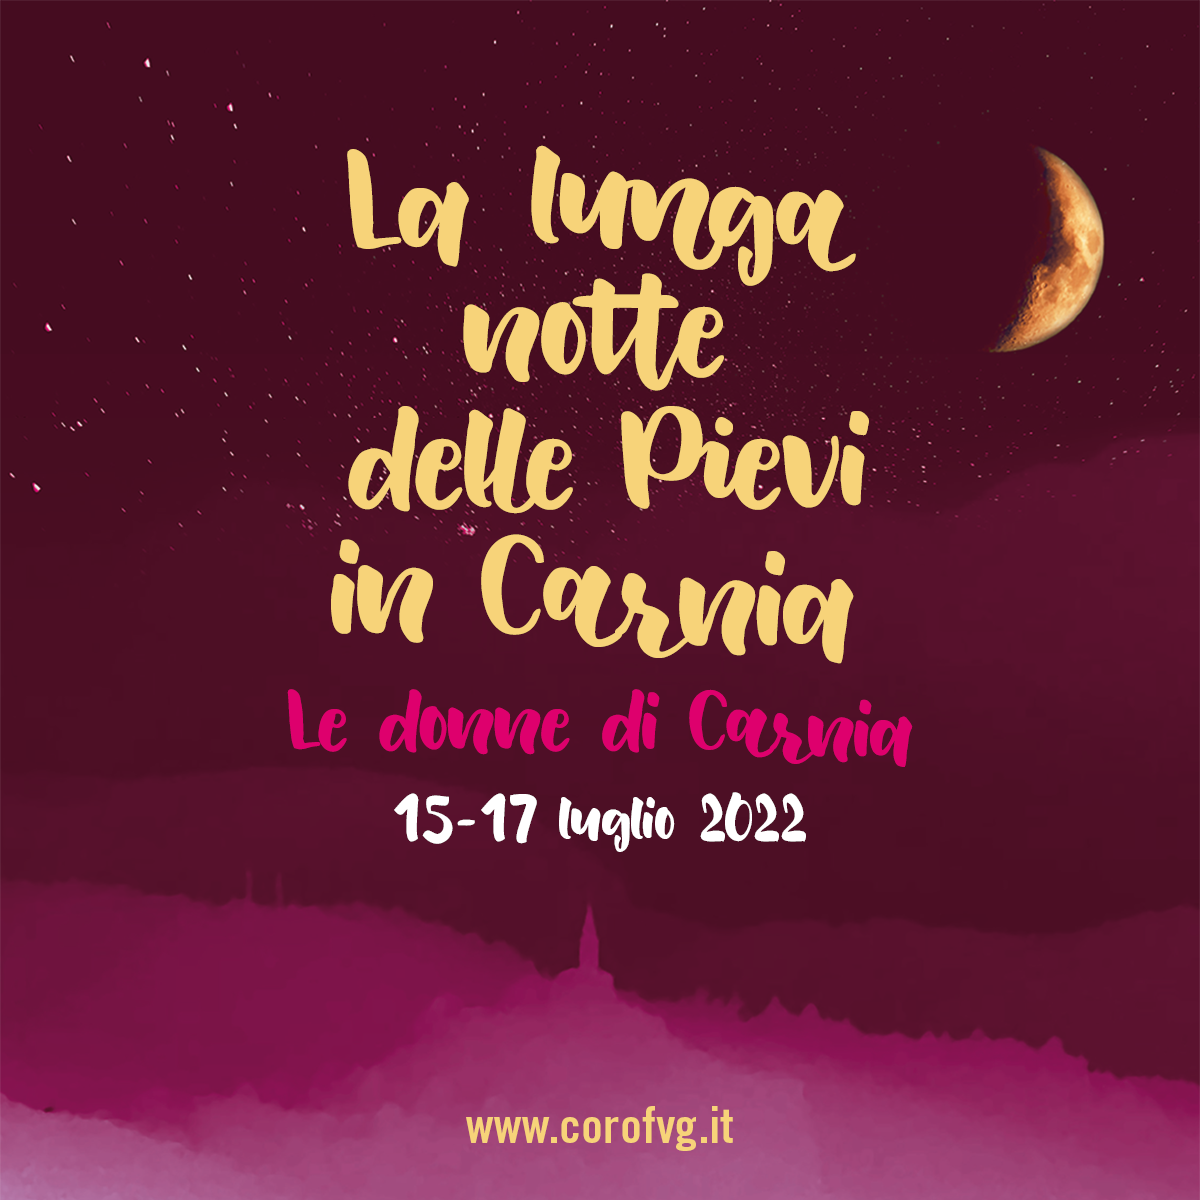 Al momento stai visualizzando La lunga notte delle pievi in Carnia è rosa: dal 15 al 17 luglio cori femminili, scrittrici e produttrici nelle antiche chiese rupestri